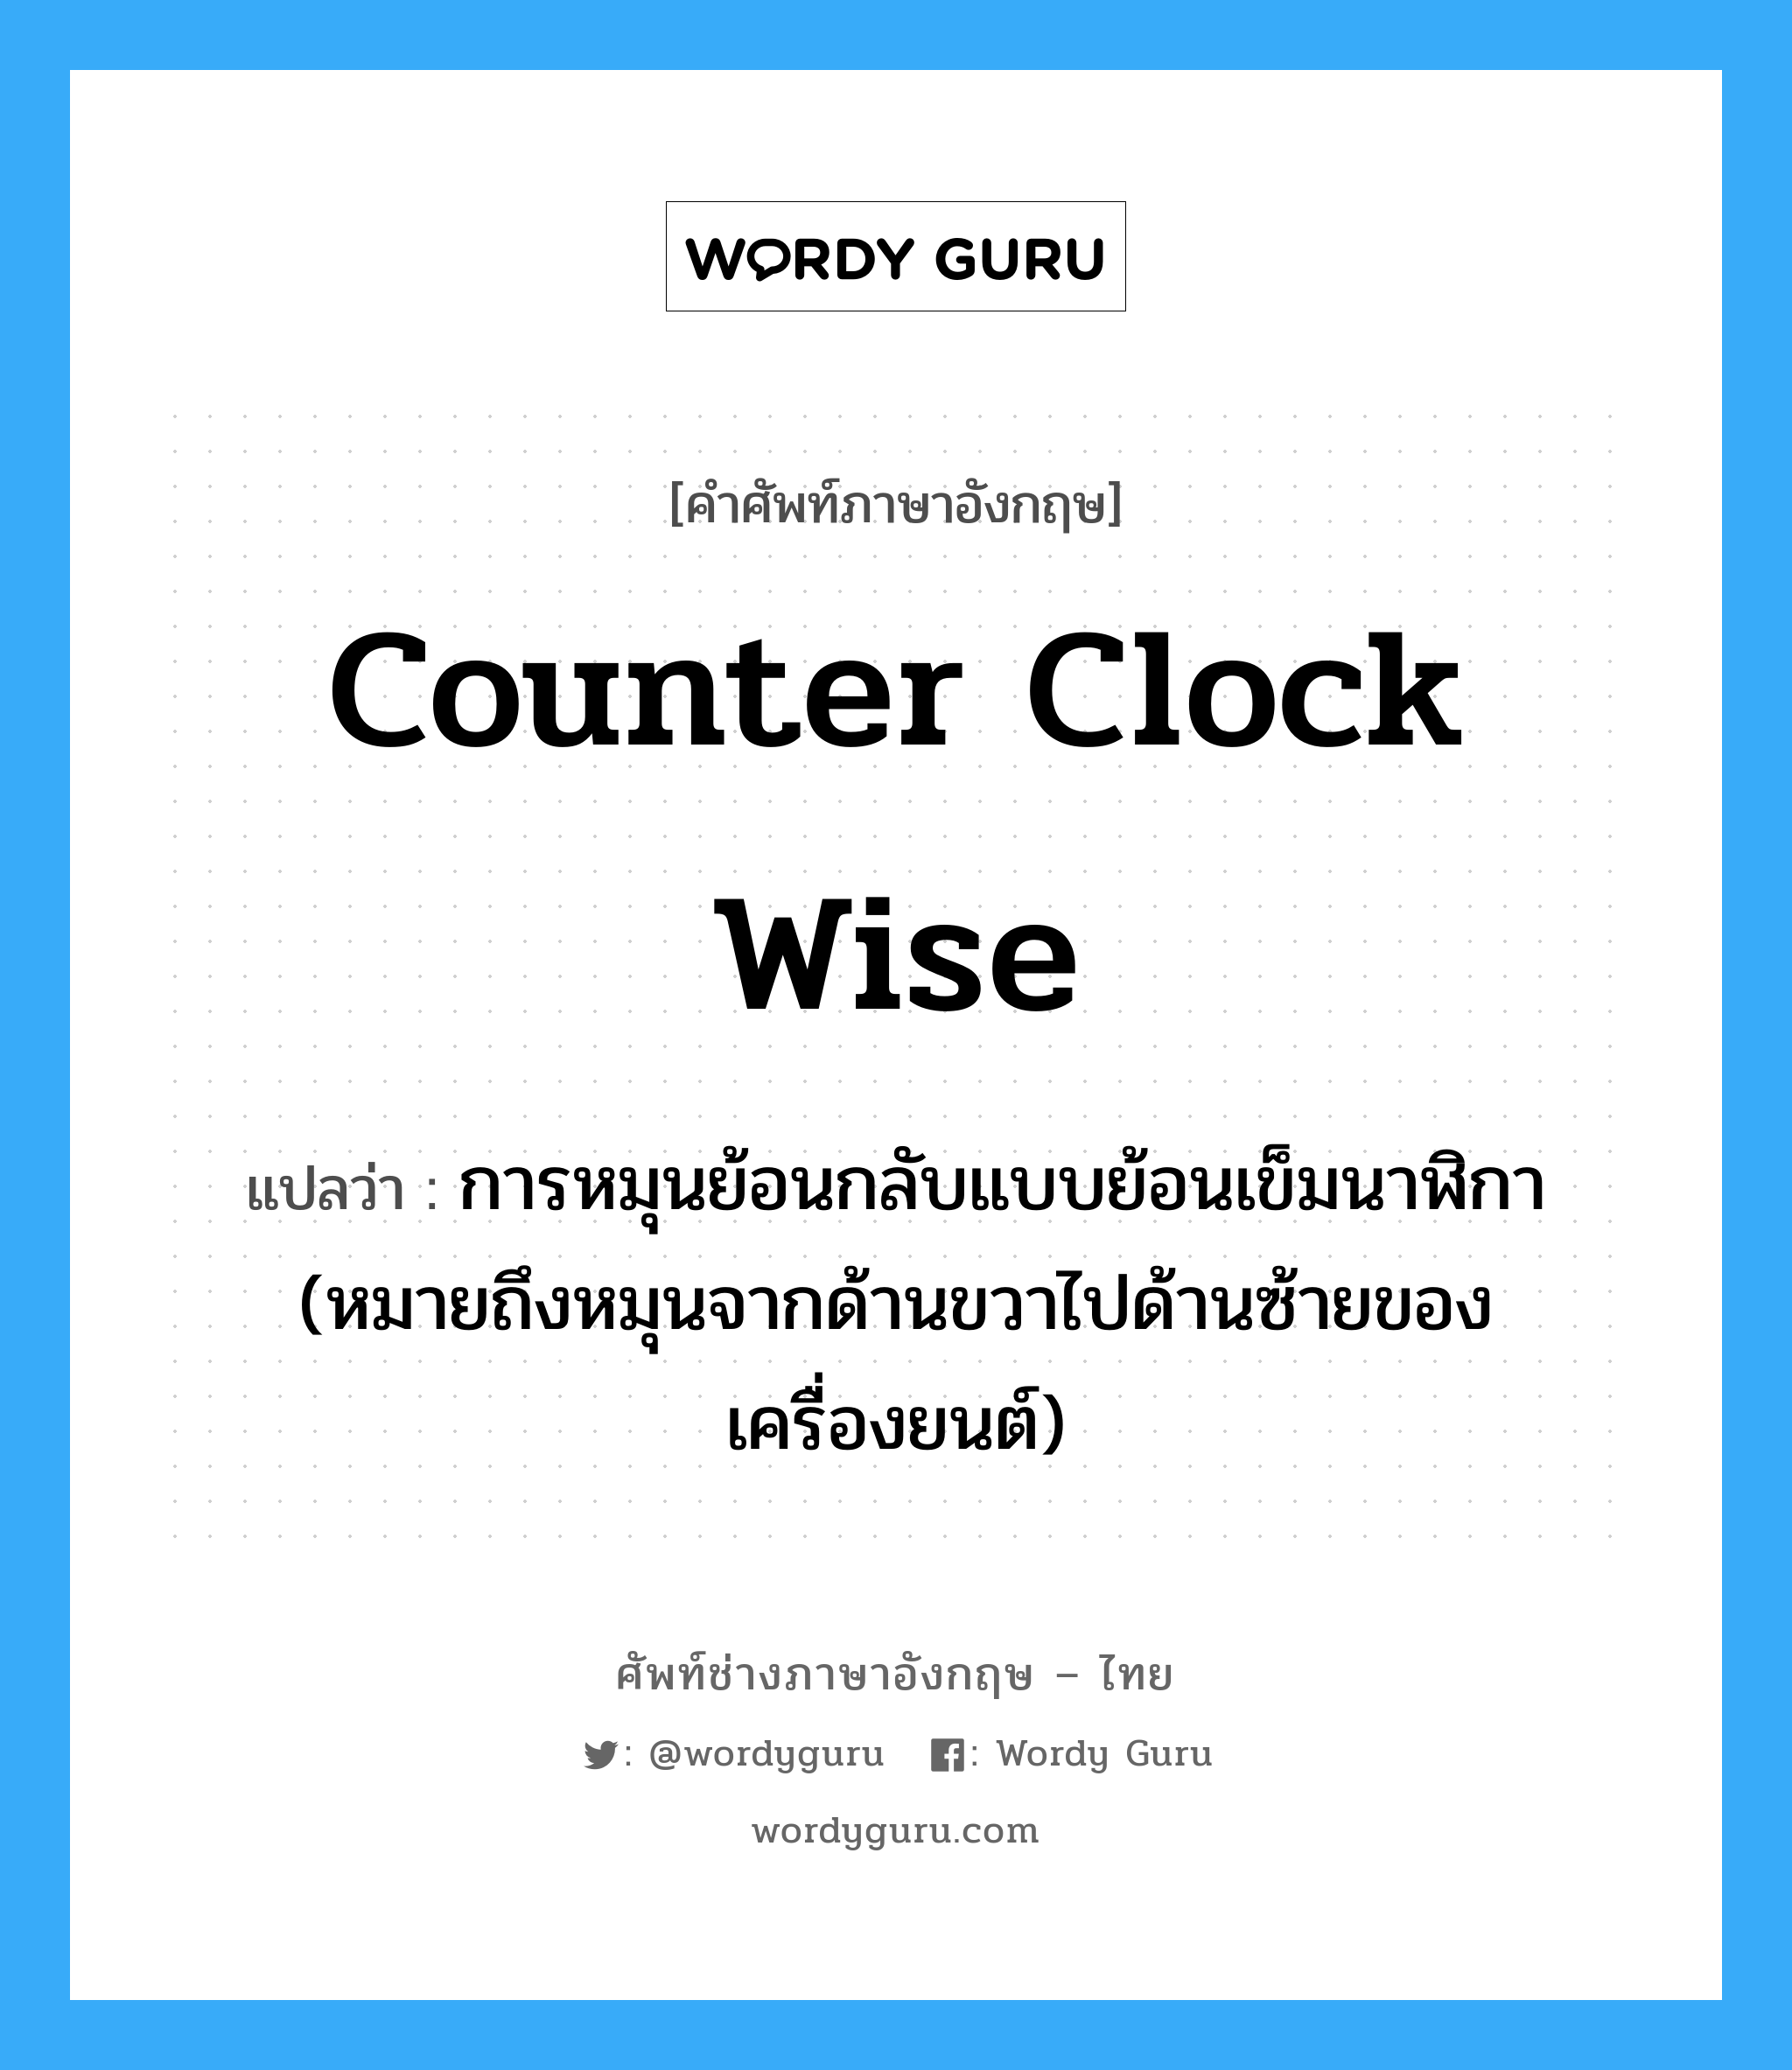 counter clock wise แปลว่า?, คำศัพท์ช่างภาษาอังกฤษ - ไทย counter clock wise คำศัพท์ภาษาอังกฤษ counter clock wise แปลว่า การหมุนย้อนกลับแบบย้อนเข็มนาฬิกา (หมายถึงหมุนจากด้านขวาไปด้านซ้ายของเครื่องยนต์)